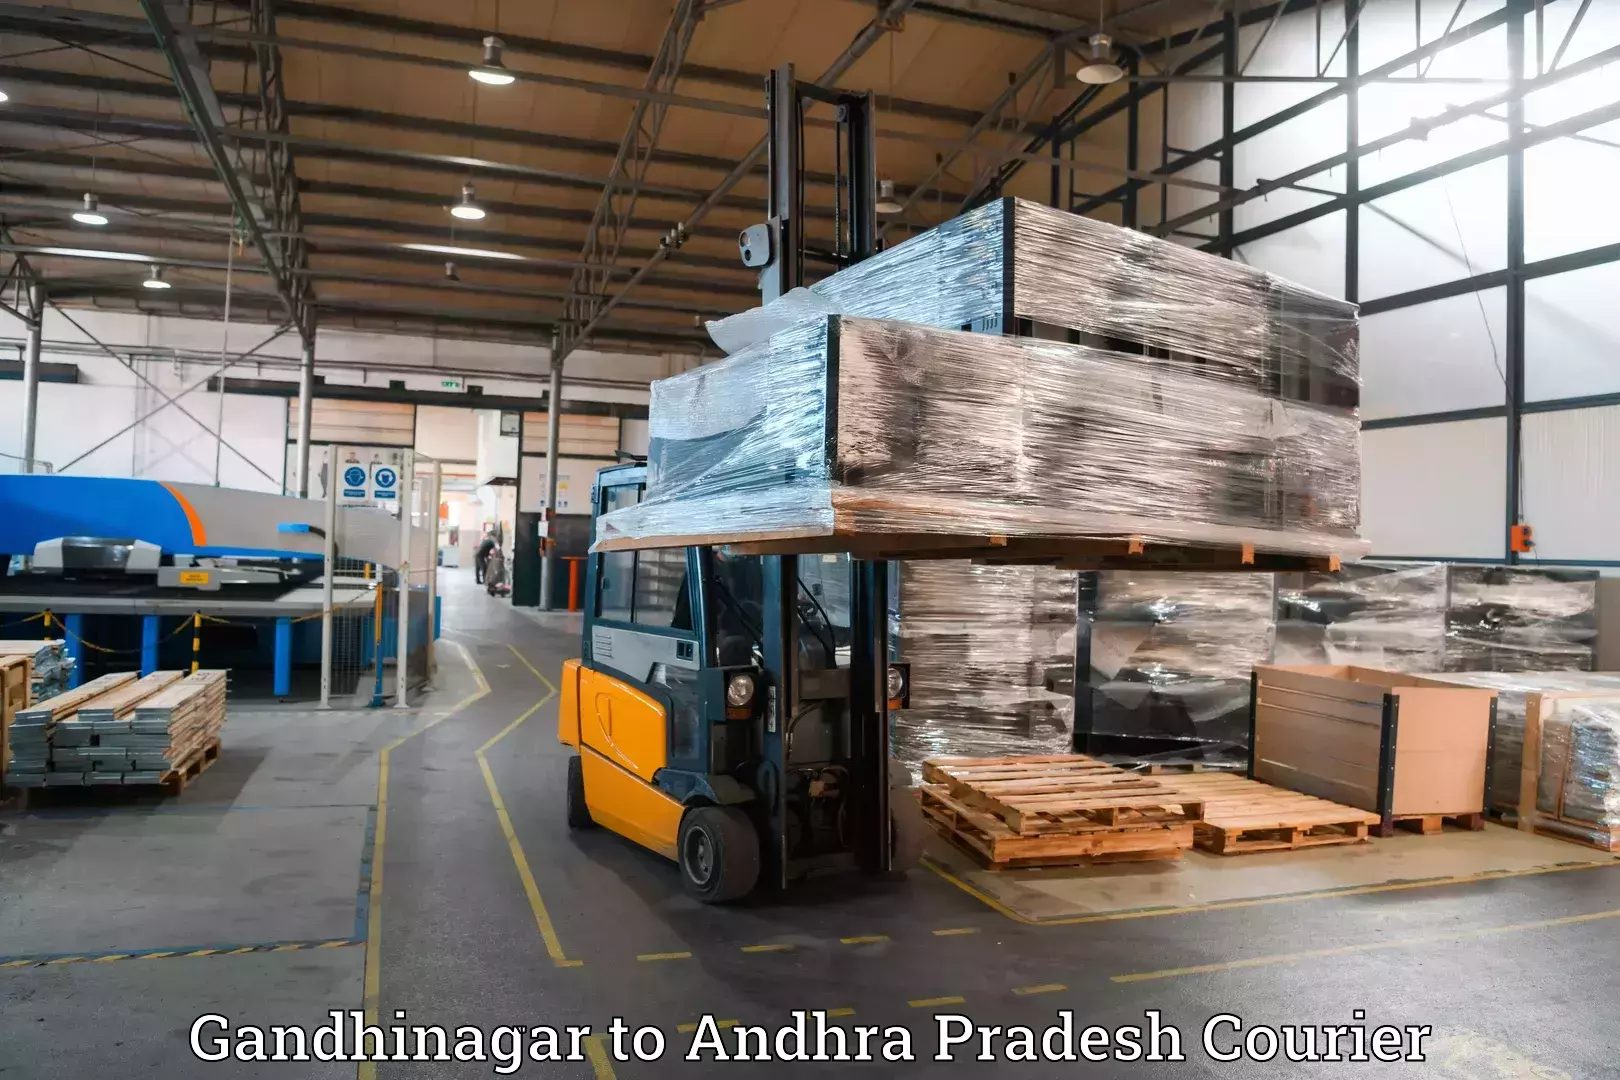 Luggage transit service Gandhinagar to Andhra Pradesh